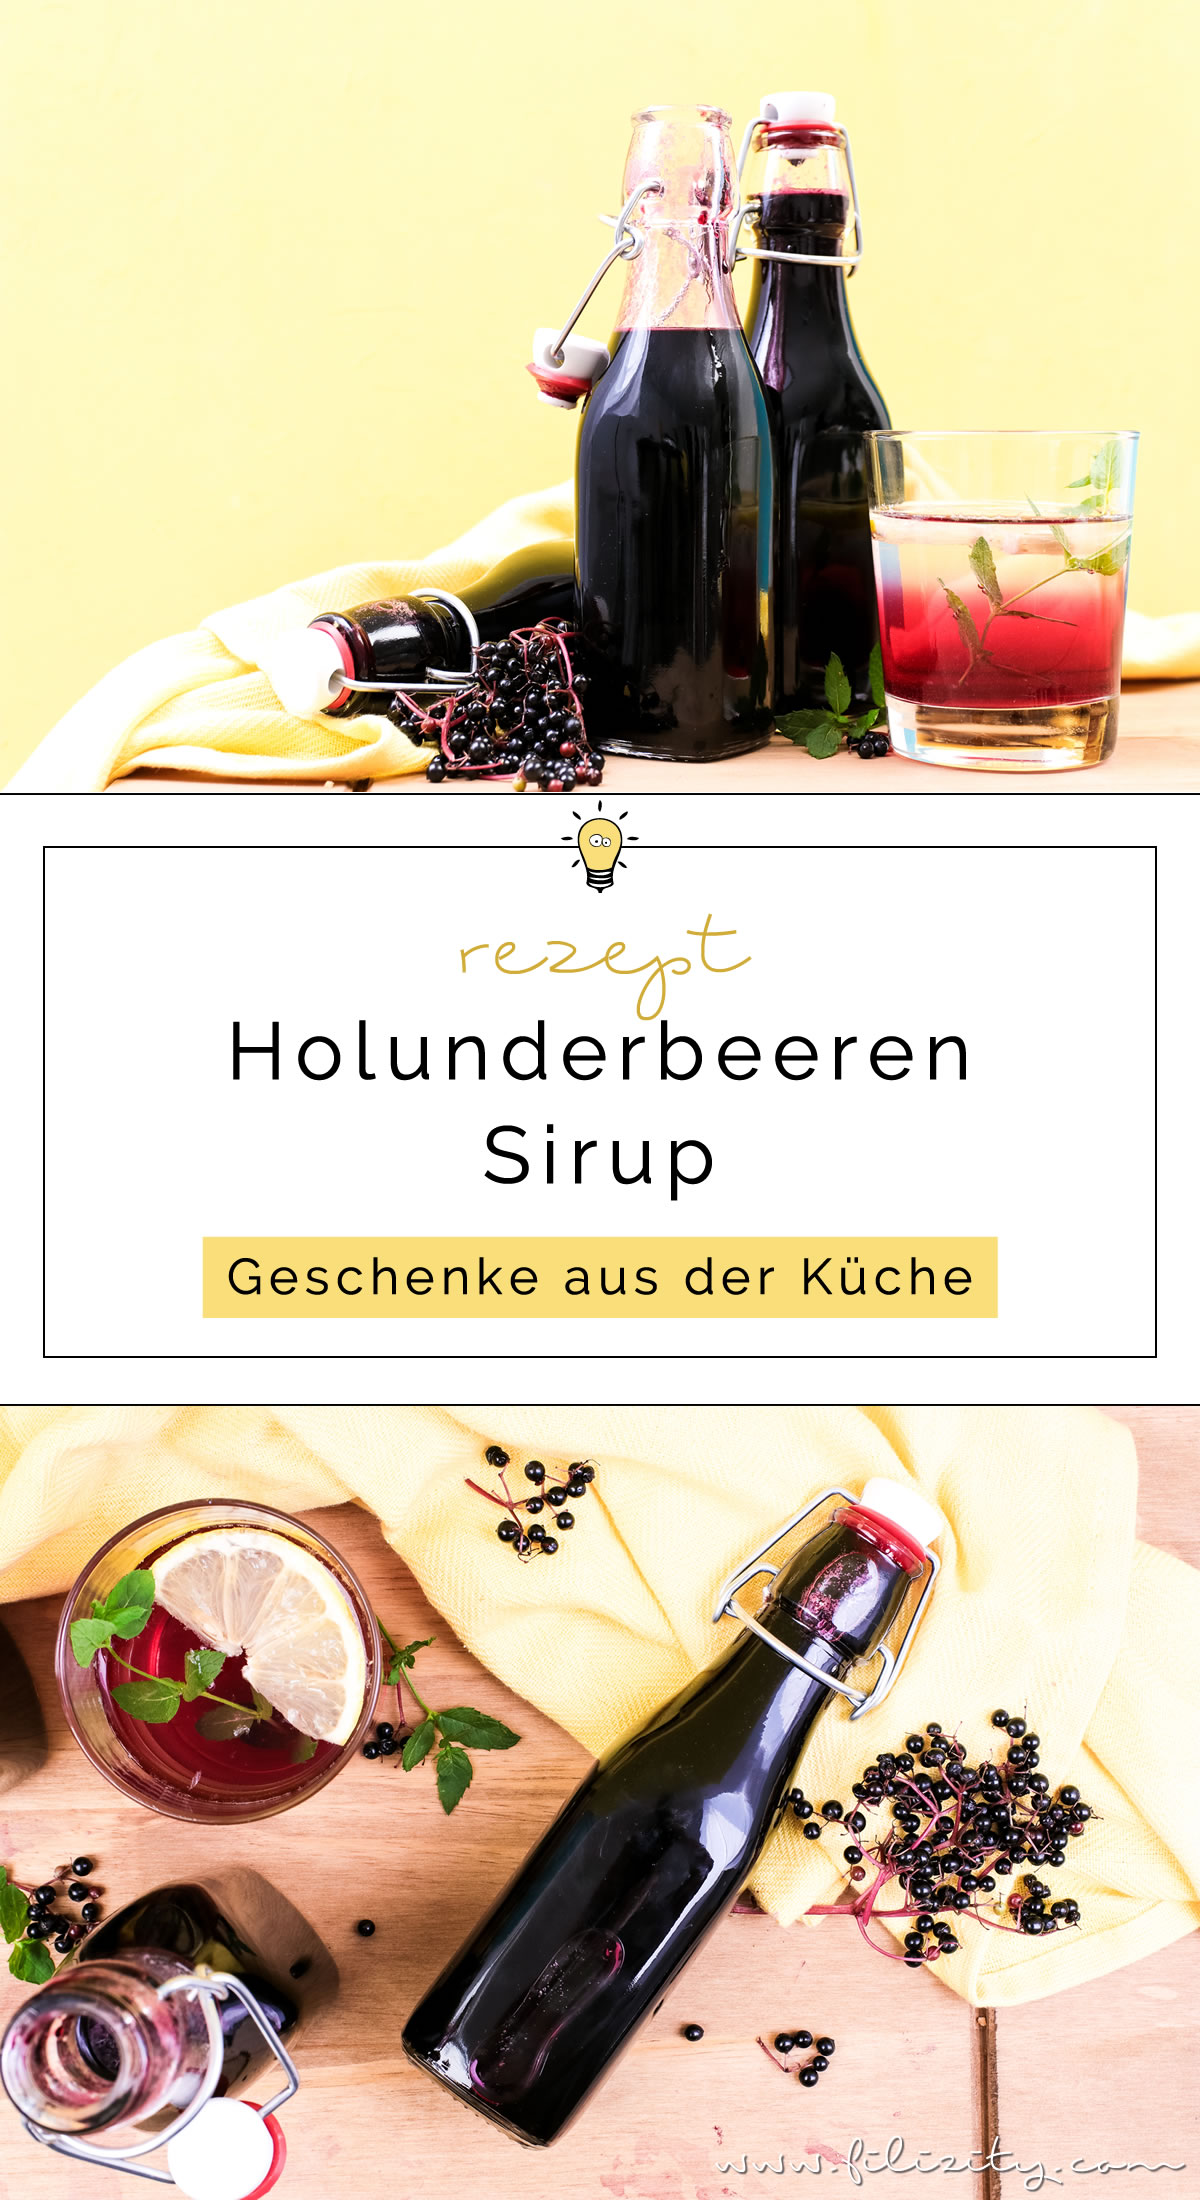 Holunderbeeren-Sirup / Fliederbeerensirup einkochen für Getränke & mehr - Mit diesem Rezept geht es ganz einfach! | Perfekt als Geschenk oder als Vorrat für den Winter! | Filizity.com | Food-Blog aus dem Rheinland #holunder #einkochen